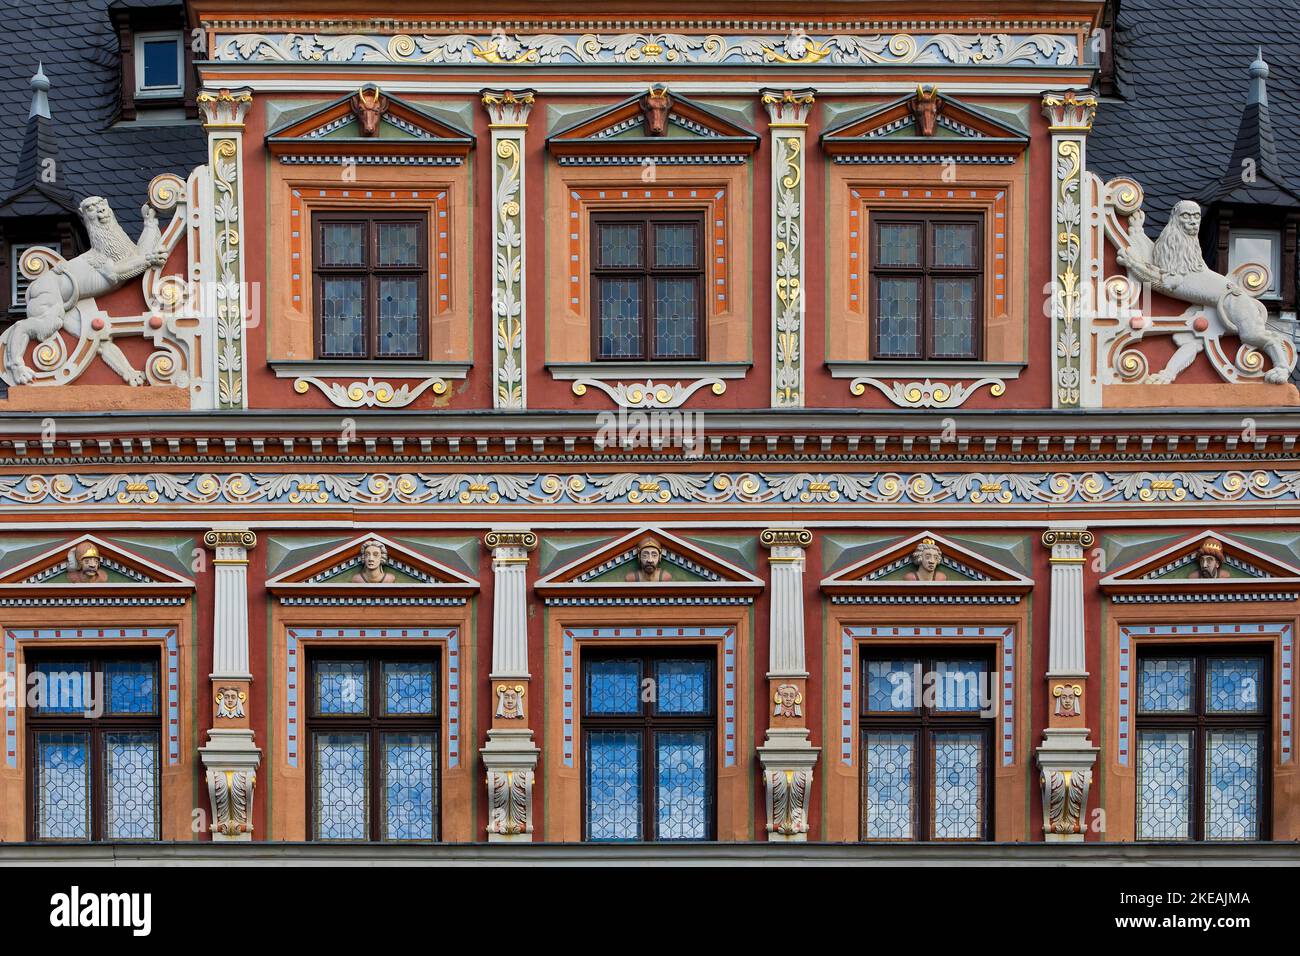 Prachtvolle Fassadendekoration am Haus zum Breiten Herd, Renaissance-Gebäude am Fischmarkt, Deutschland, Thüringen, Erfurt Stockfoto